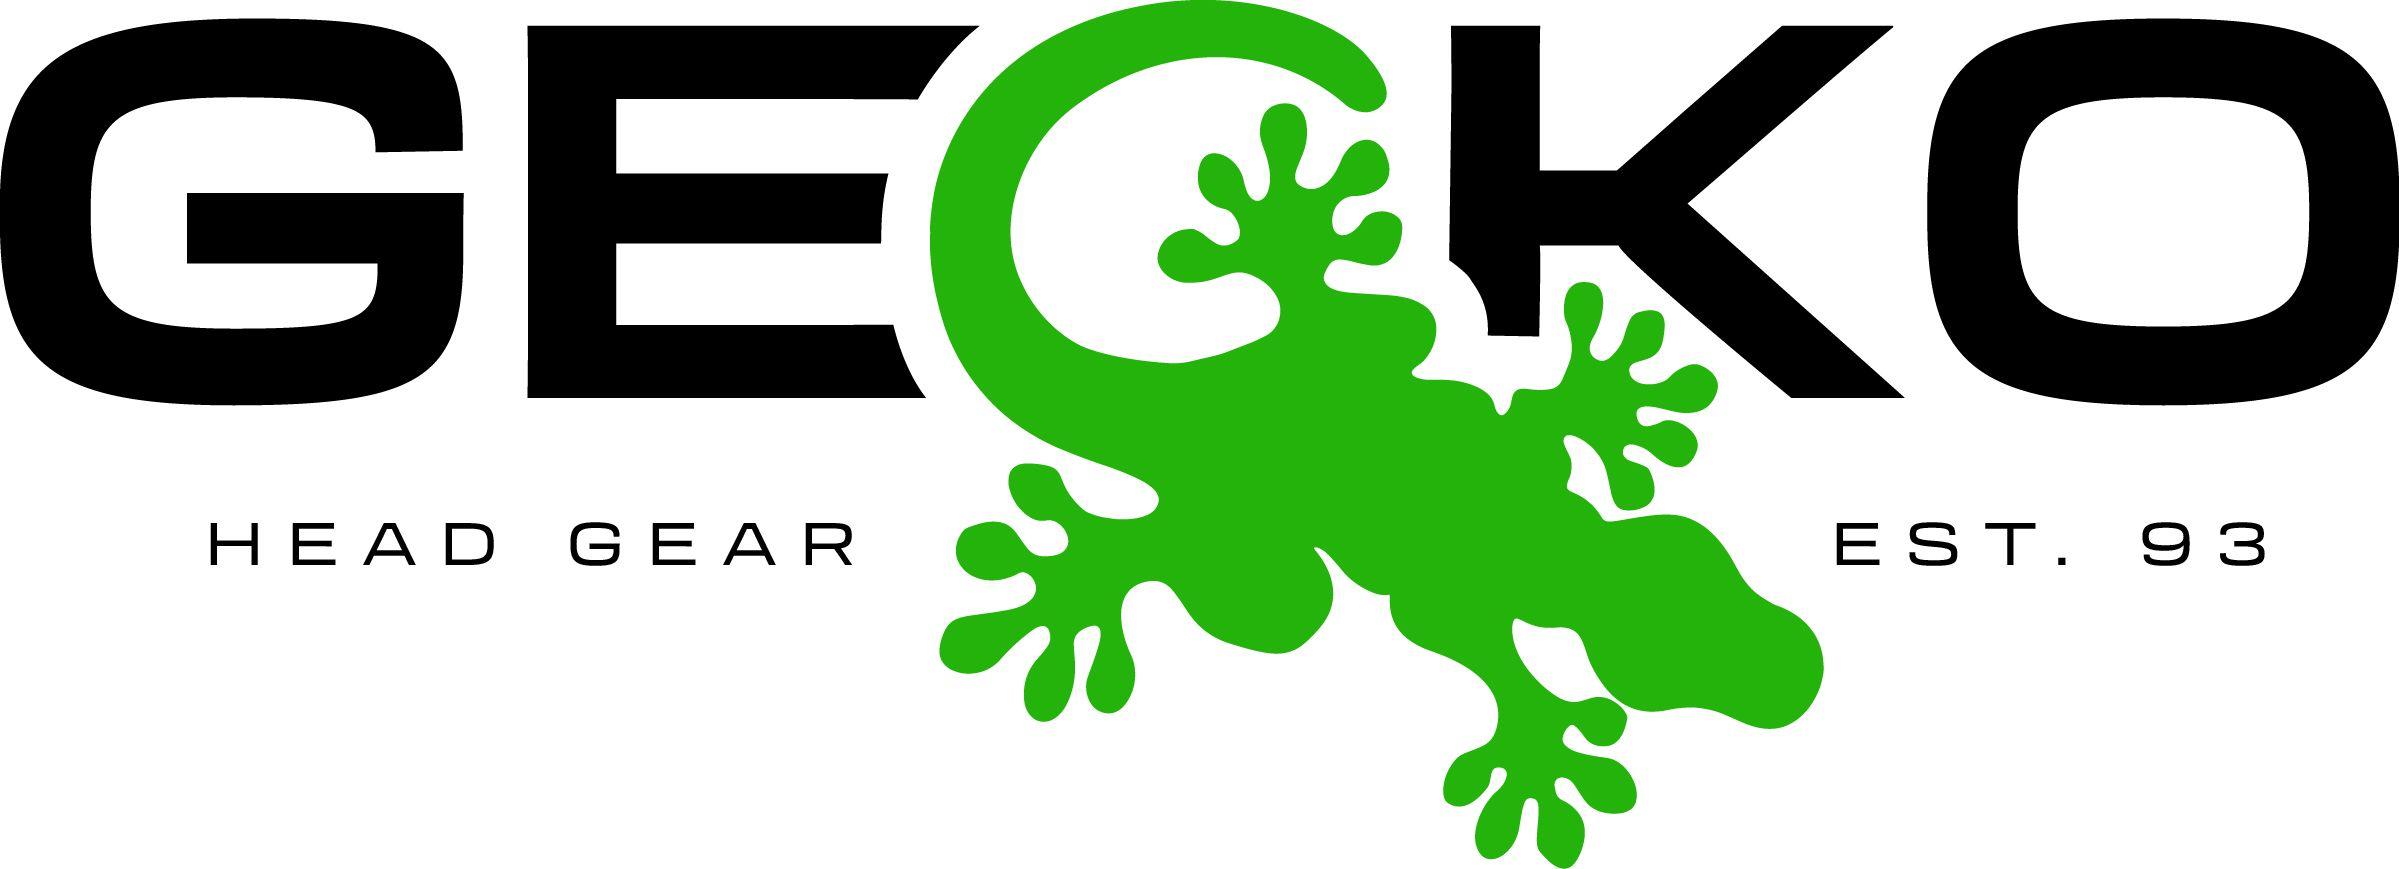 Image of Gecko Head Gear.